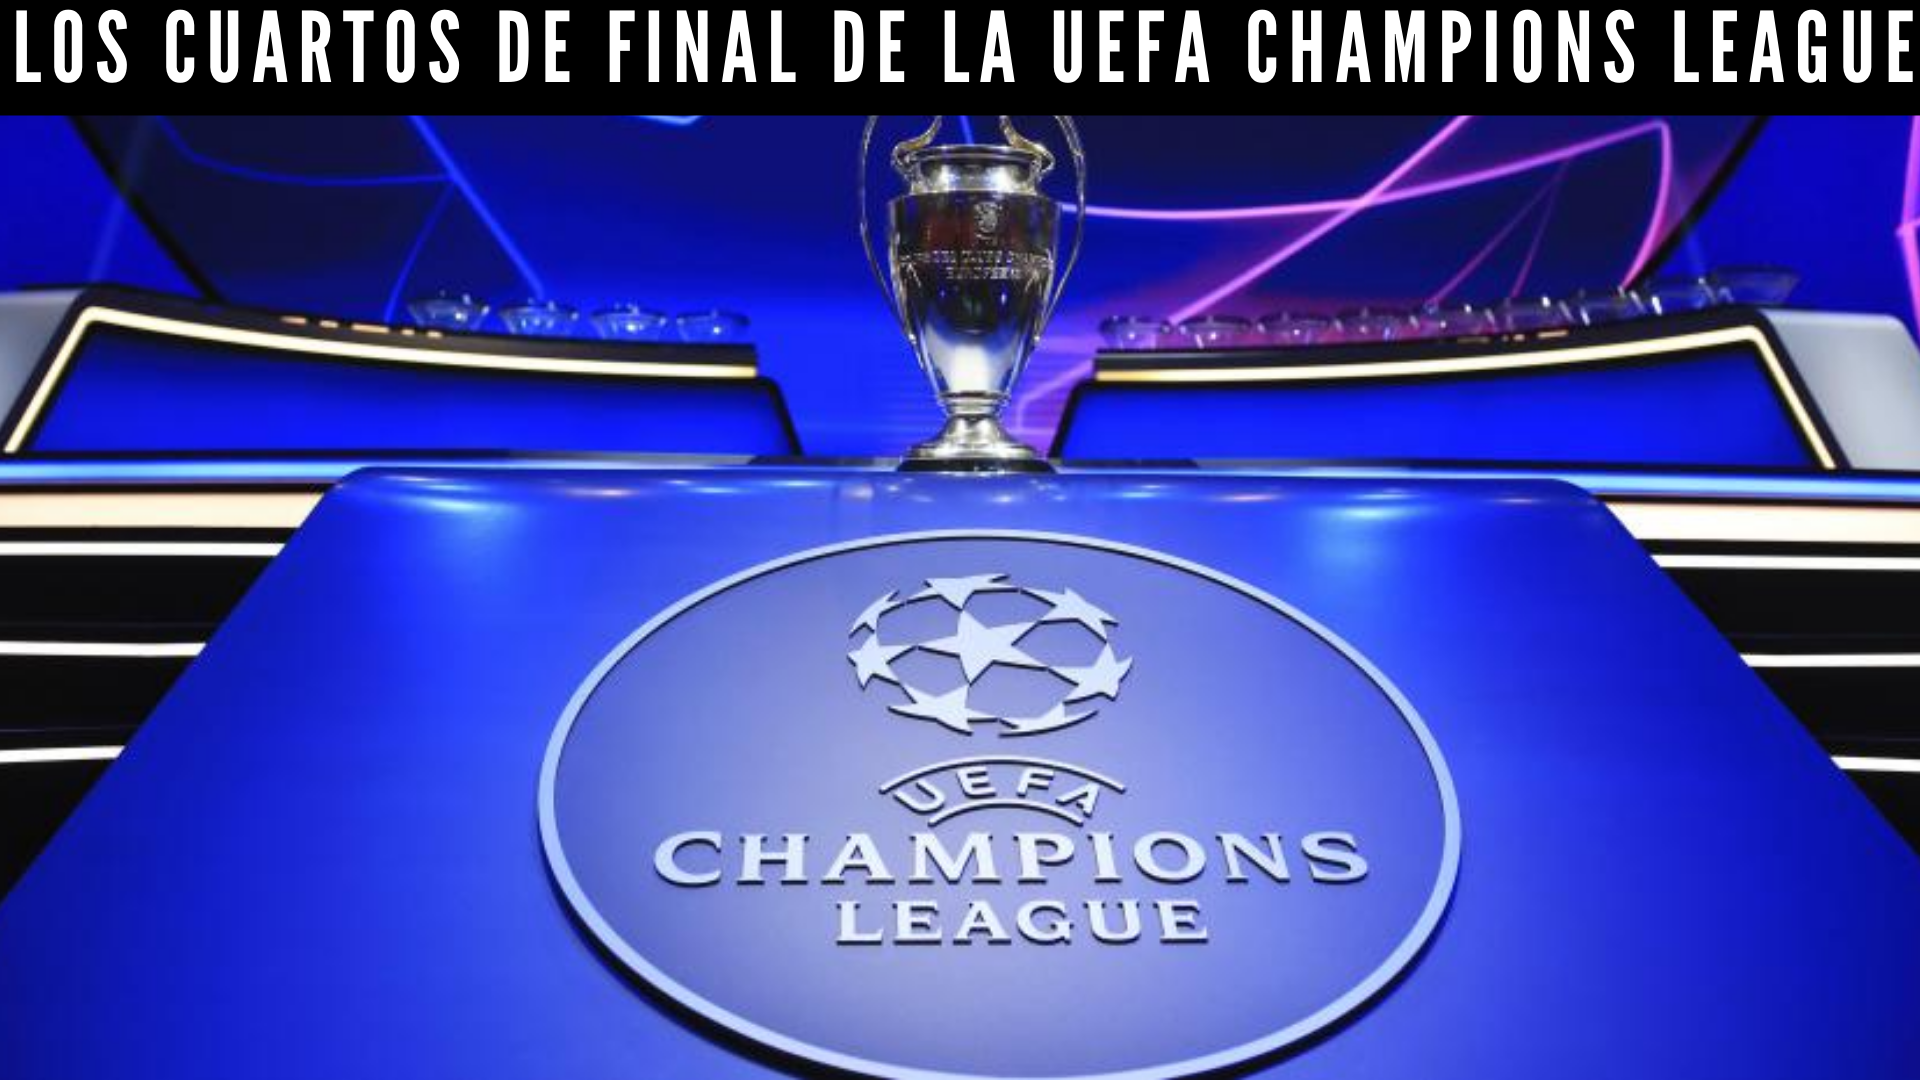 Los cuartos de final de la UEFA Champions League.png